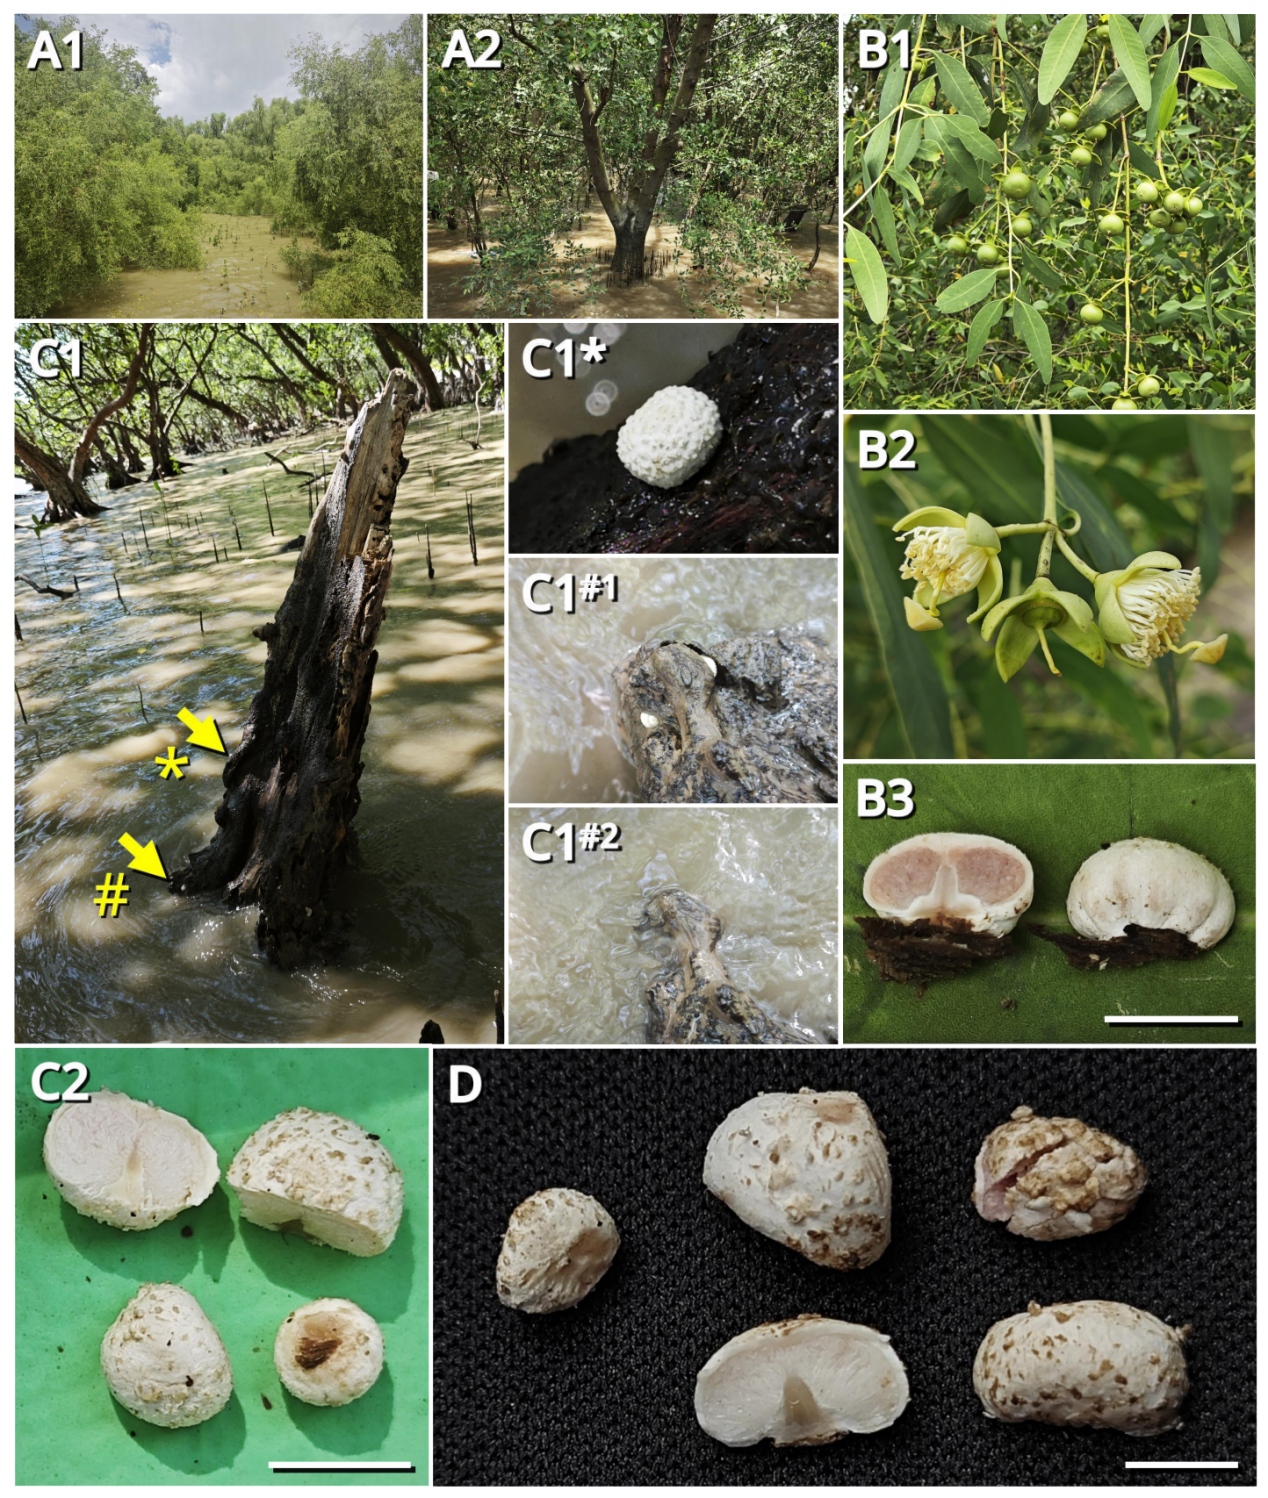 全球首次发现！深圳西湾红树林现新物种“海洋蘑菇”